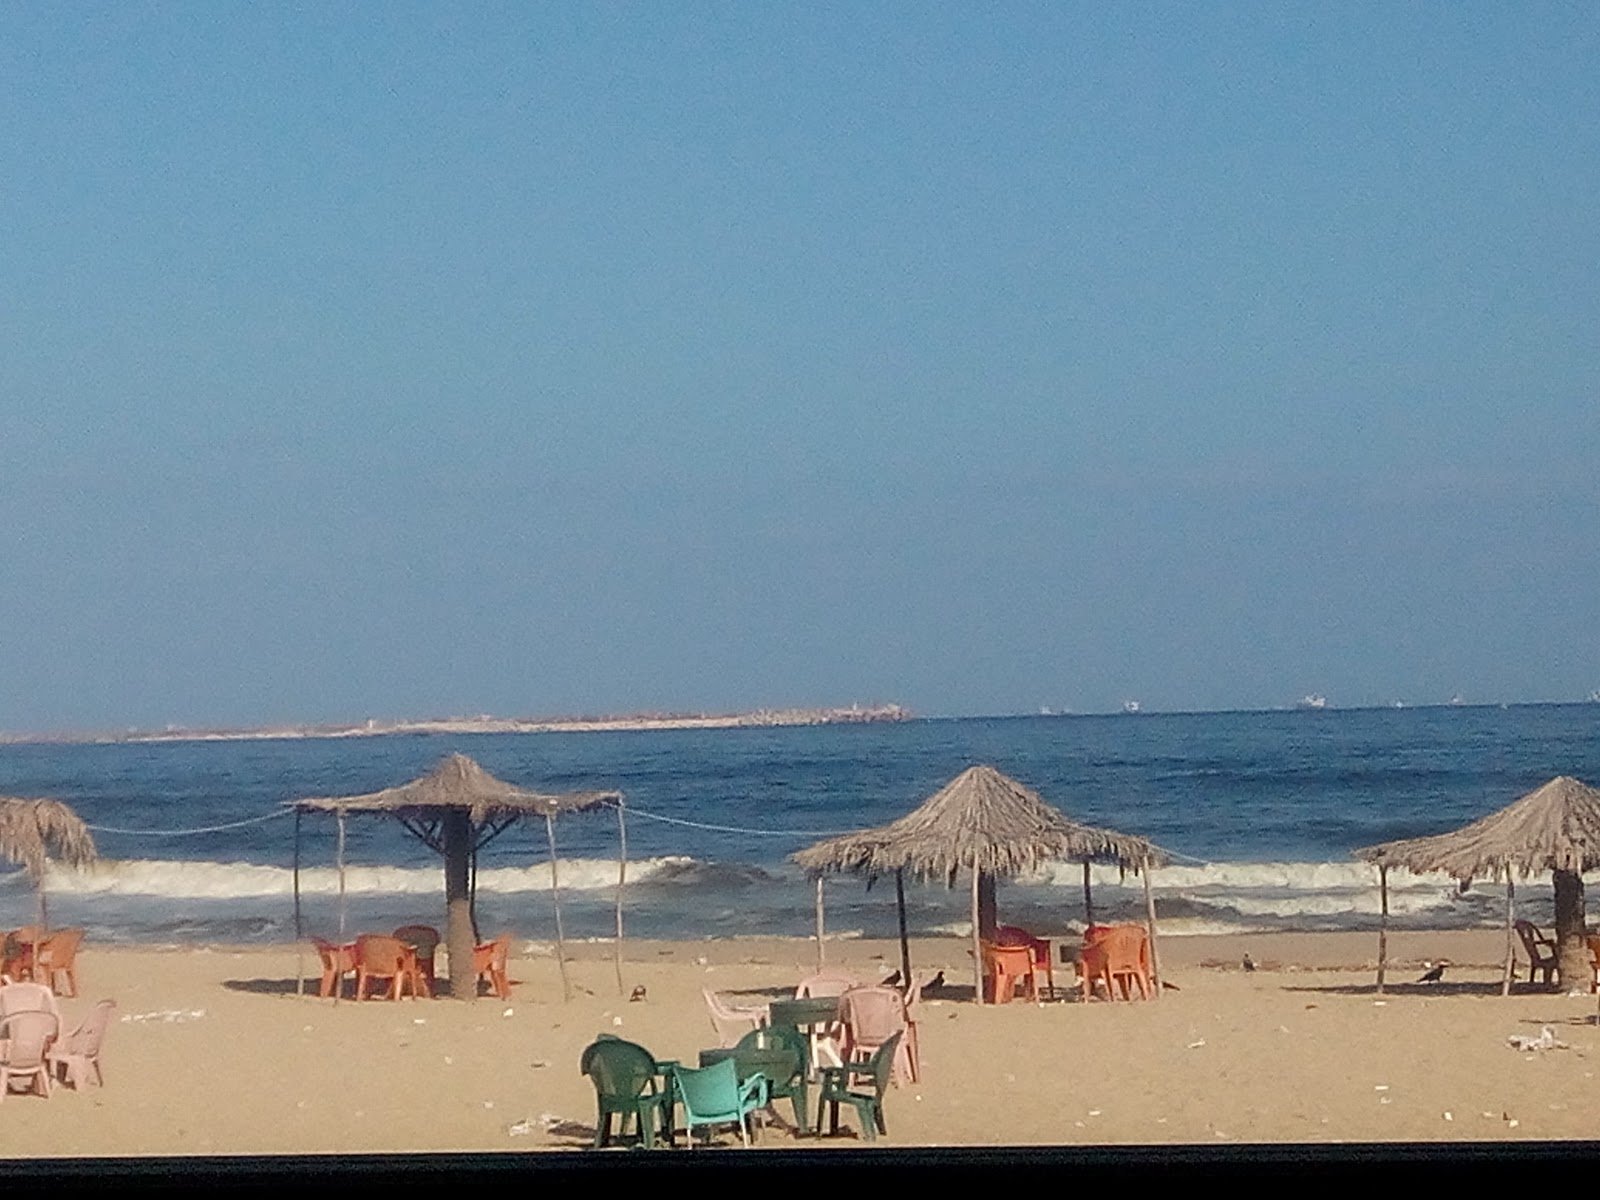 Foto de El Nakheel Free Beach área de resort de praia